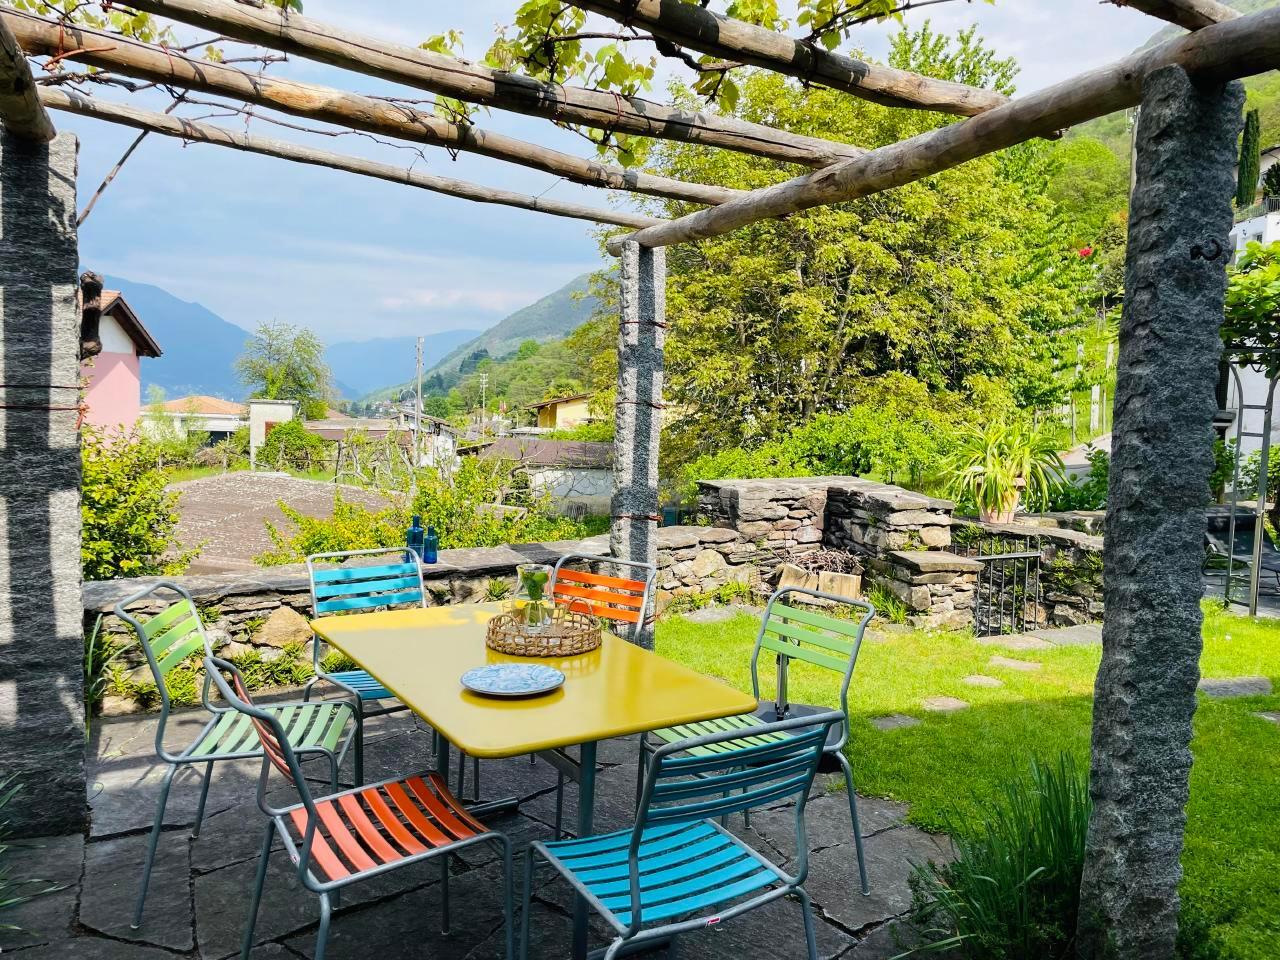 Rustico-Ferienwohnung mit Garten Casa-Ritz Ferienwohnung in der Schweiz